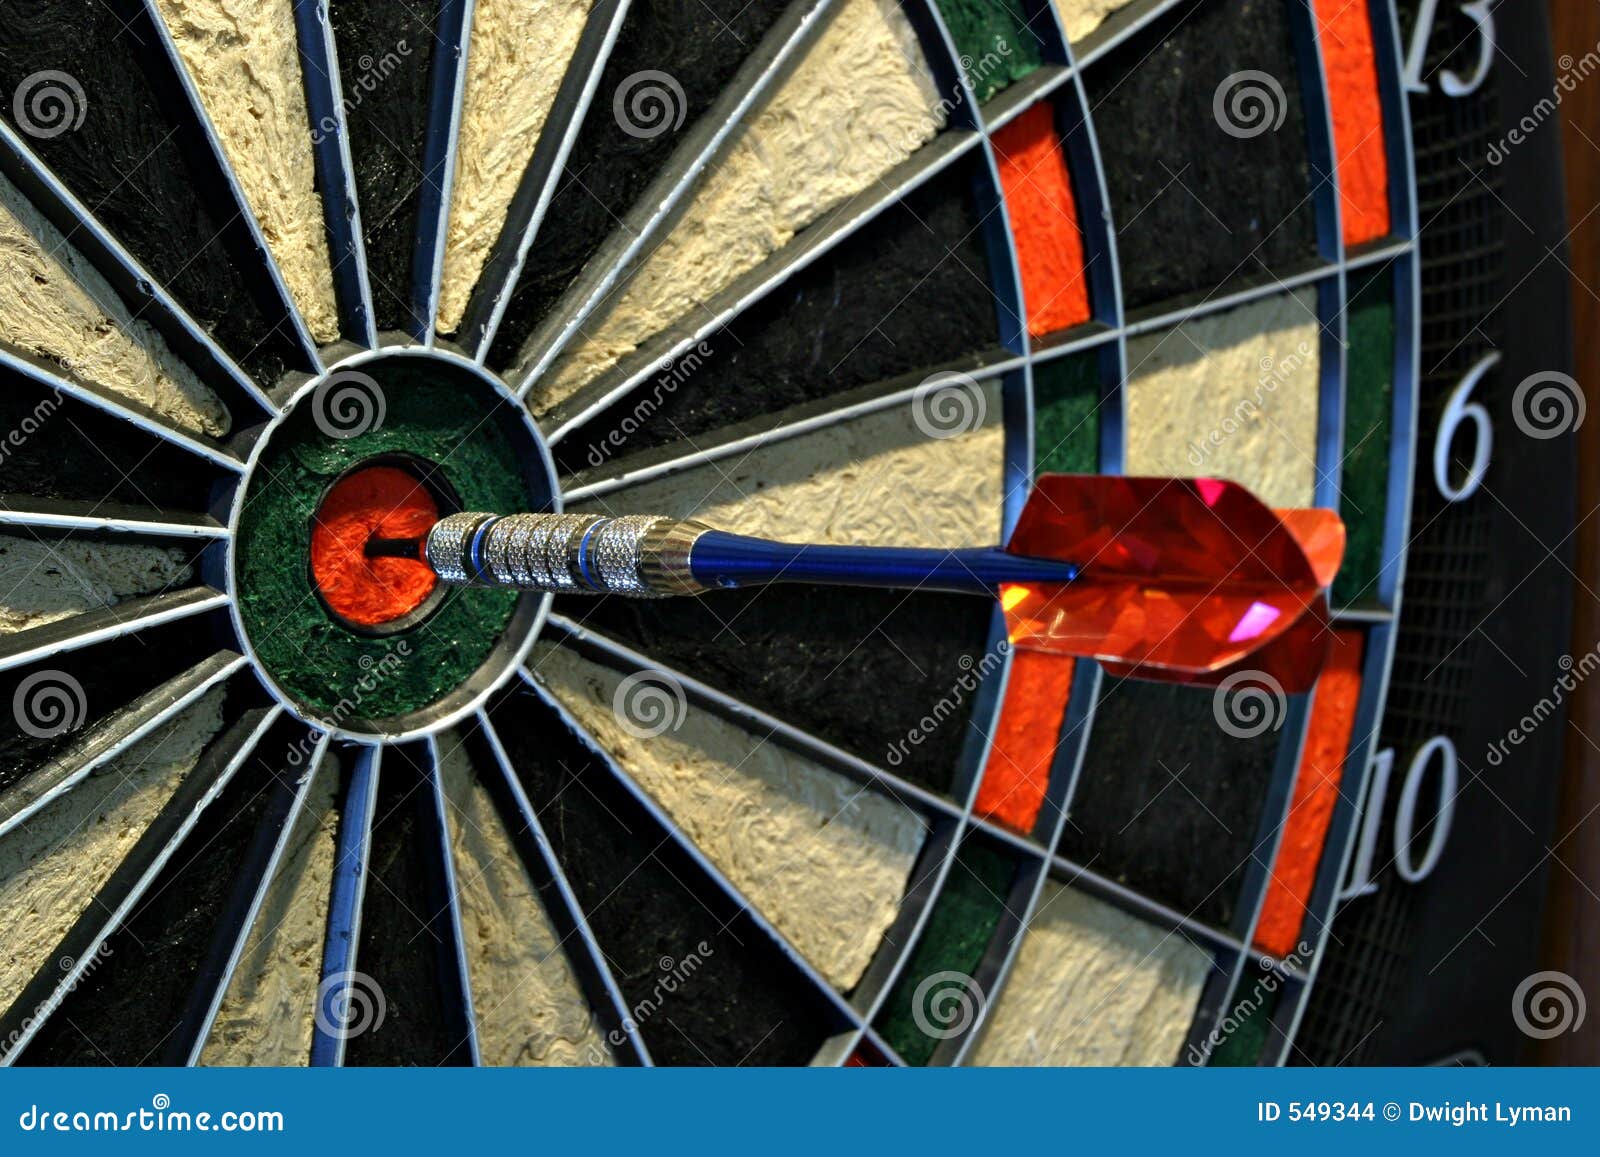 bullseye dart on dartboard